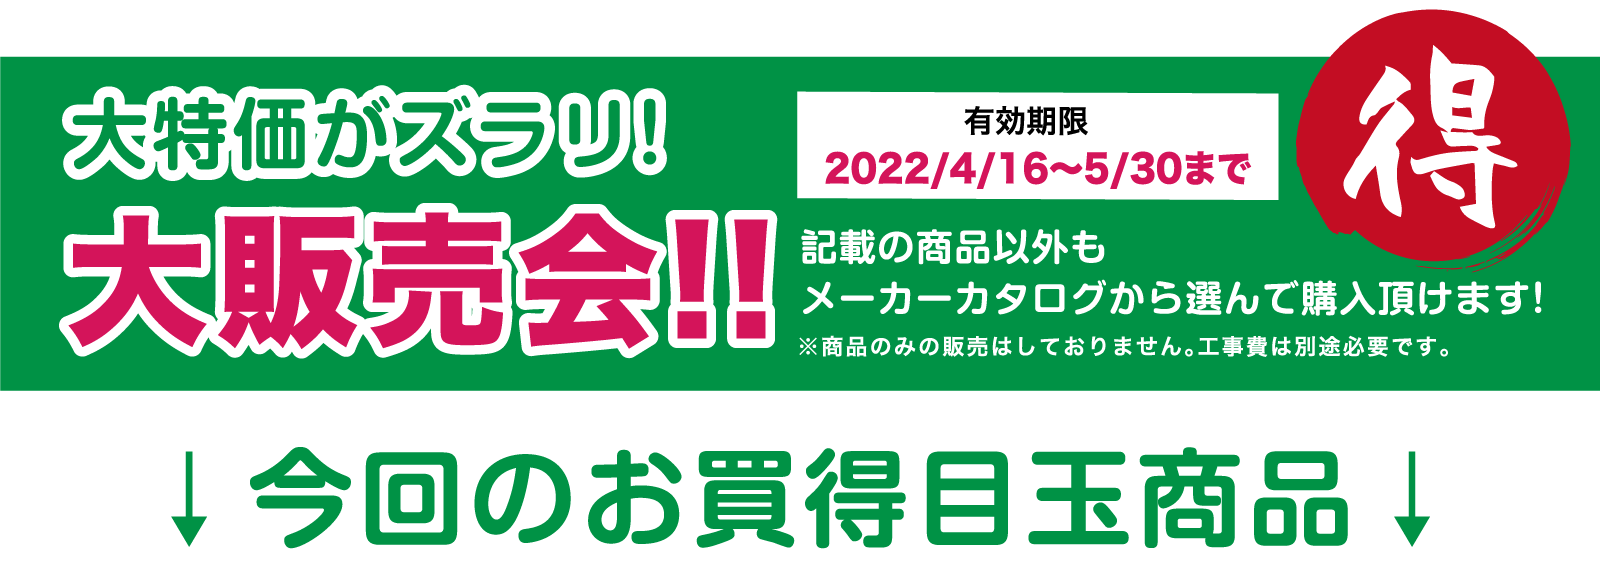 2022年こそはリフォーム！リフォーム祭 in タカラ仙台ショールーム 展示品